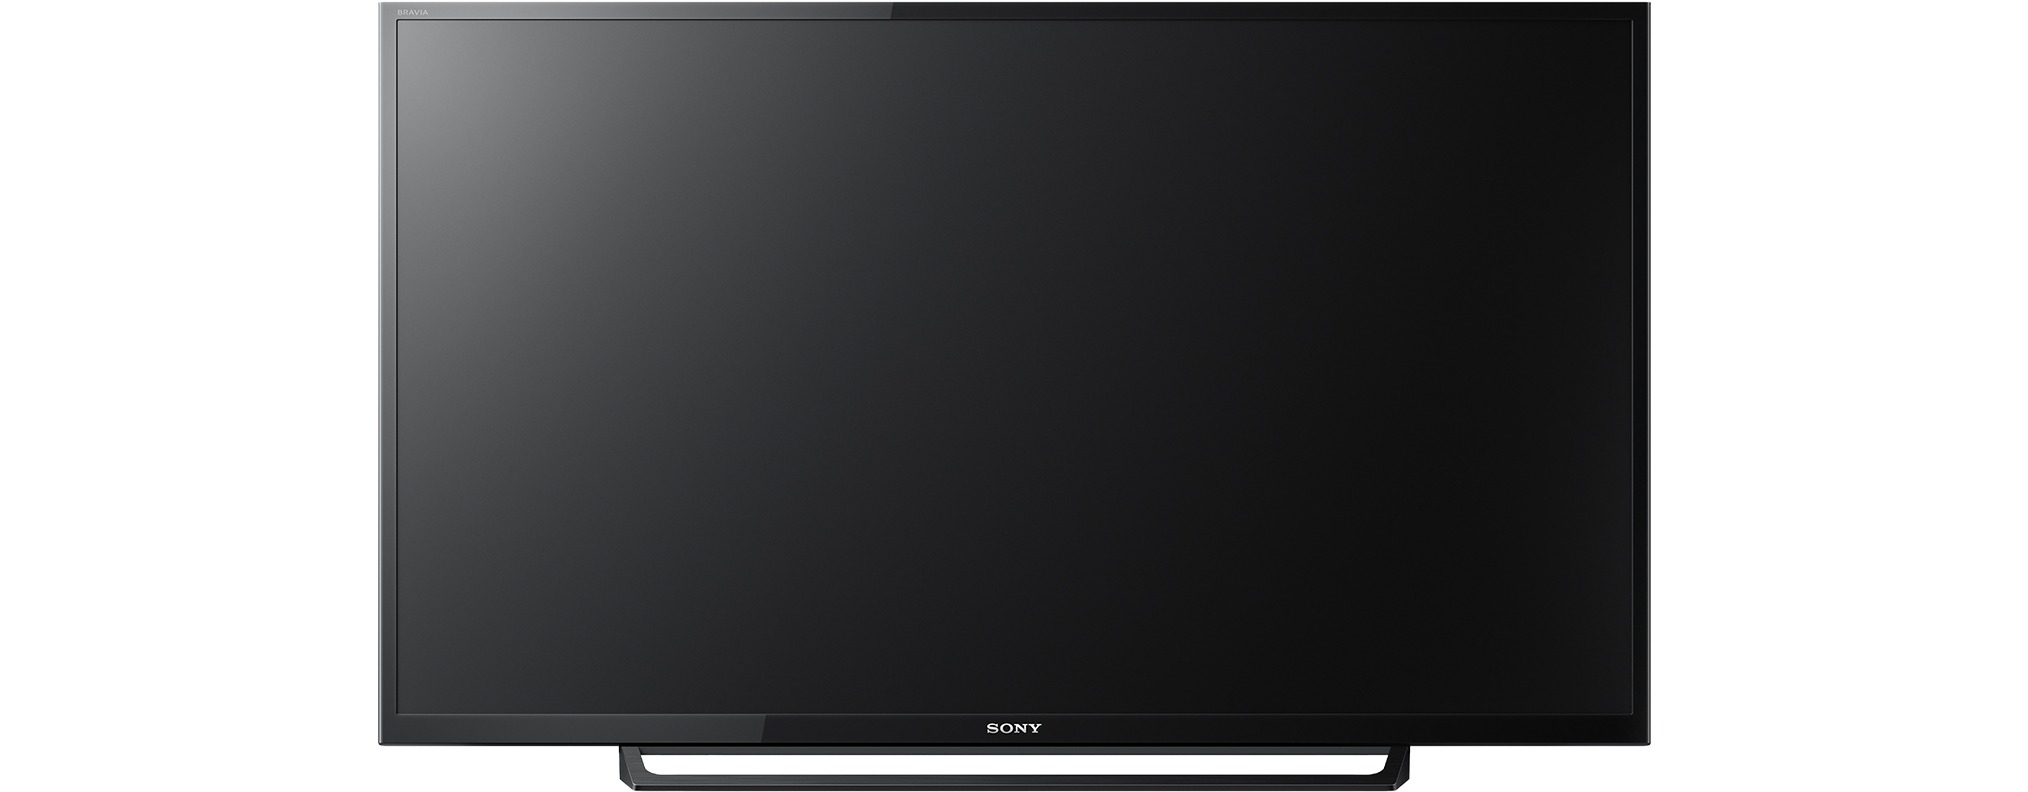 Телевизор Sony KDL-32re303. Телевизор Sony KDL 32w705c. Телевизор Sony KDL-32re303 31.5" (2017). Sony kdl40re353br. Телевизор sony samsung